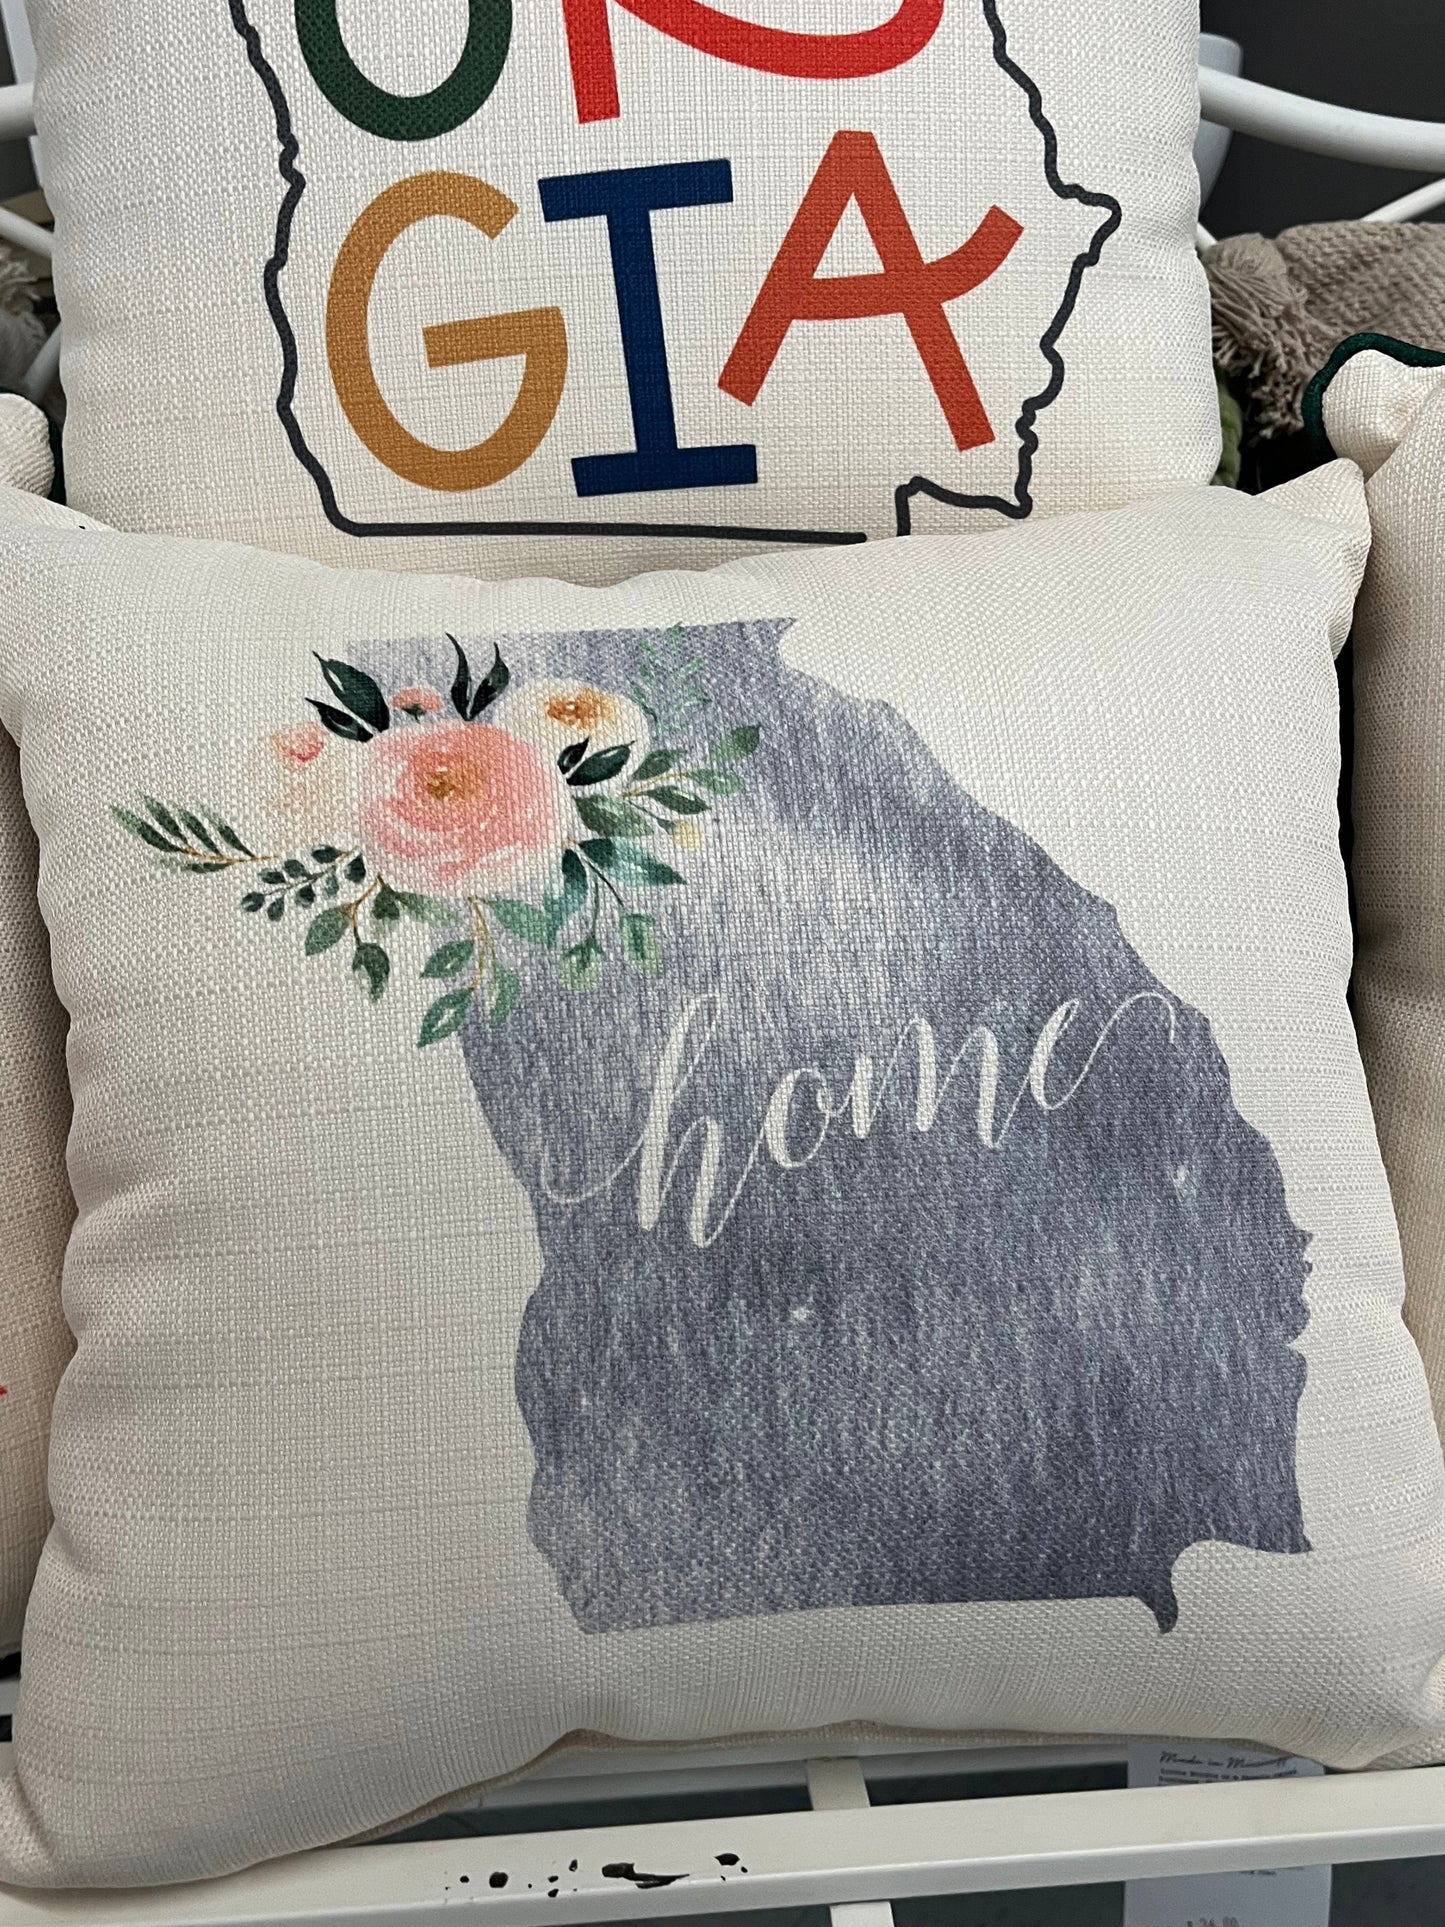 Georgia Peach Pillows